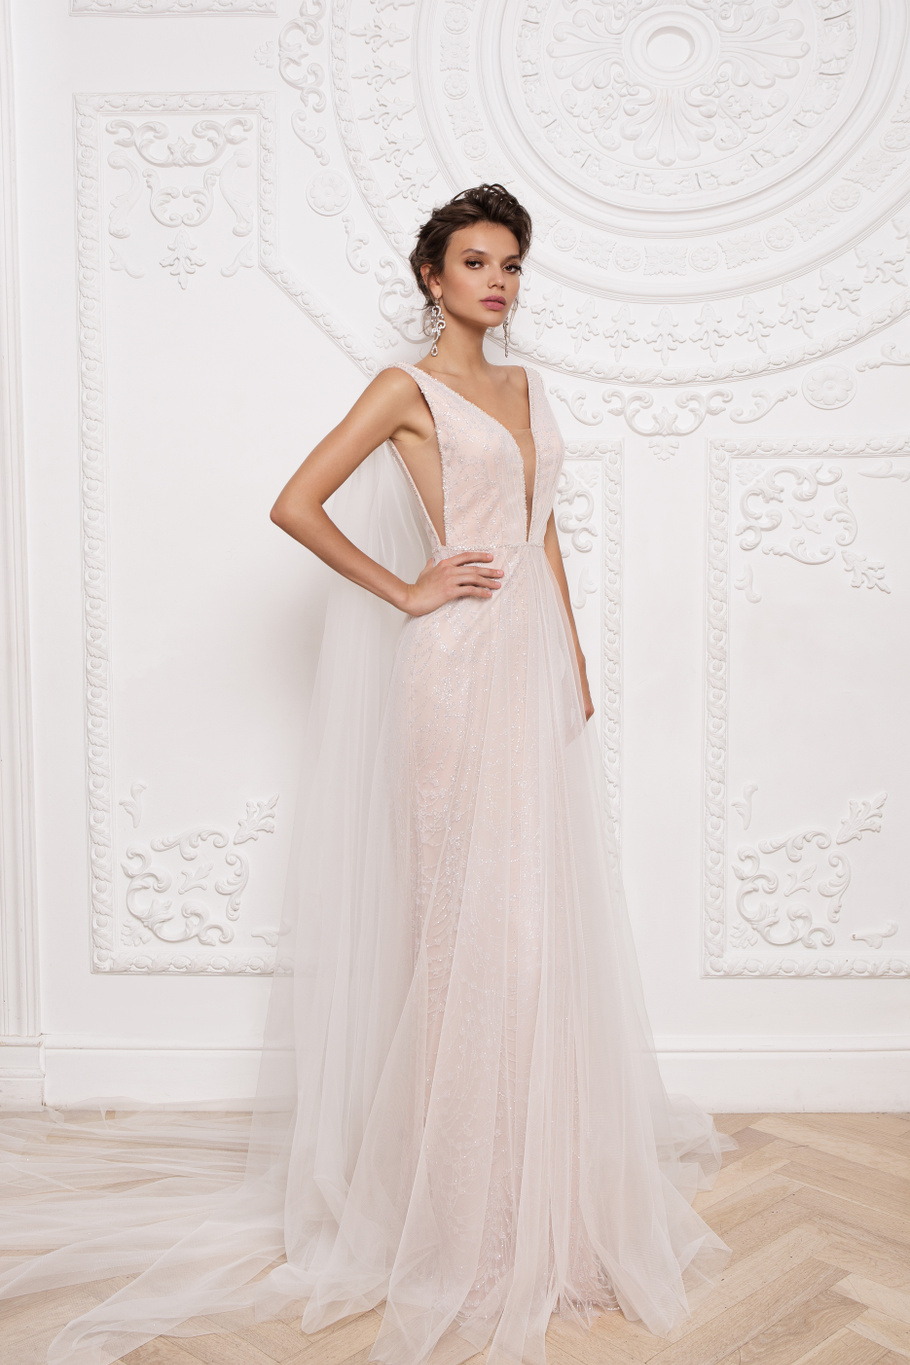 Купить свадебное платье «Прадин» Мэрри Марк из коллекции 2020 года в Нижнем Новгороде